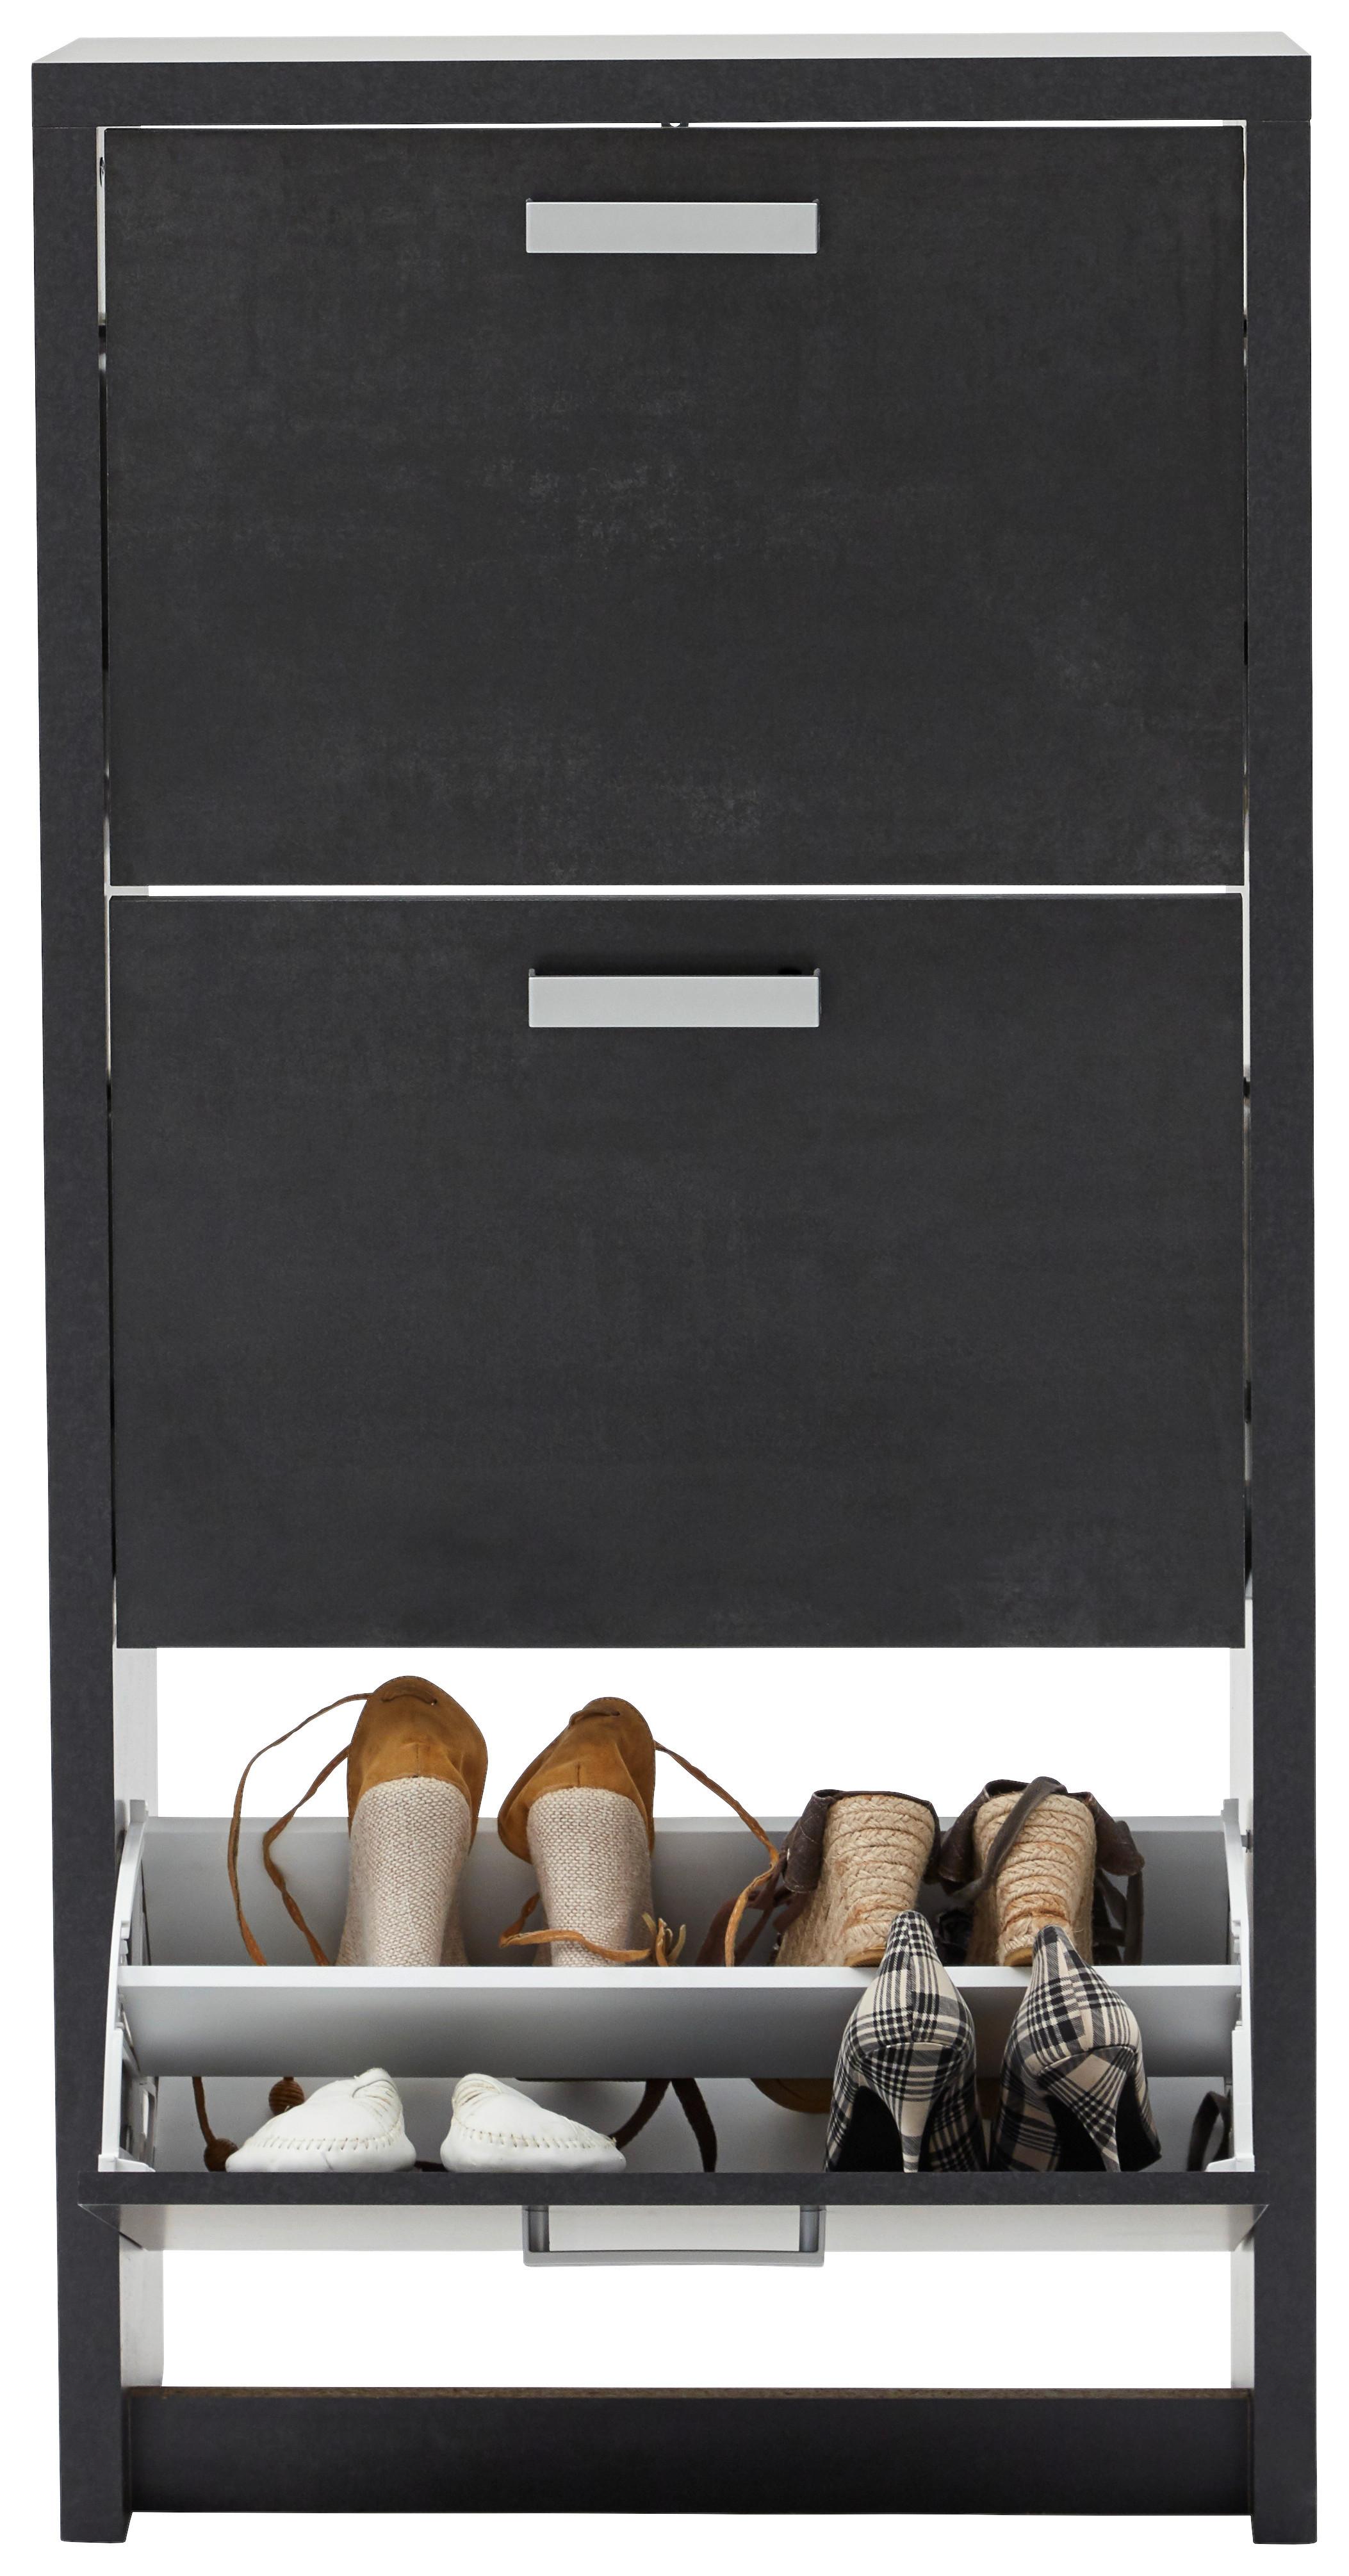 Omara Z Loputami Za Čevlje Big 3 - črna/barve aluminija, Moderno, umetna masa/leseni material (64/125/24cm) - Modern Living